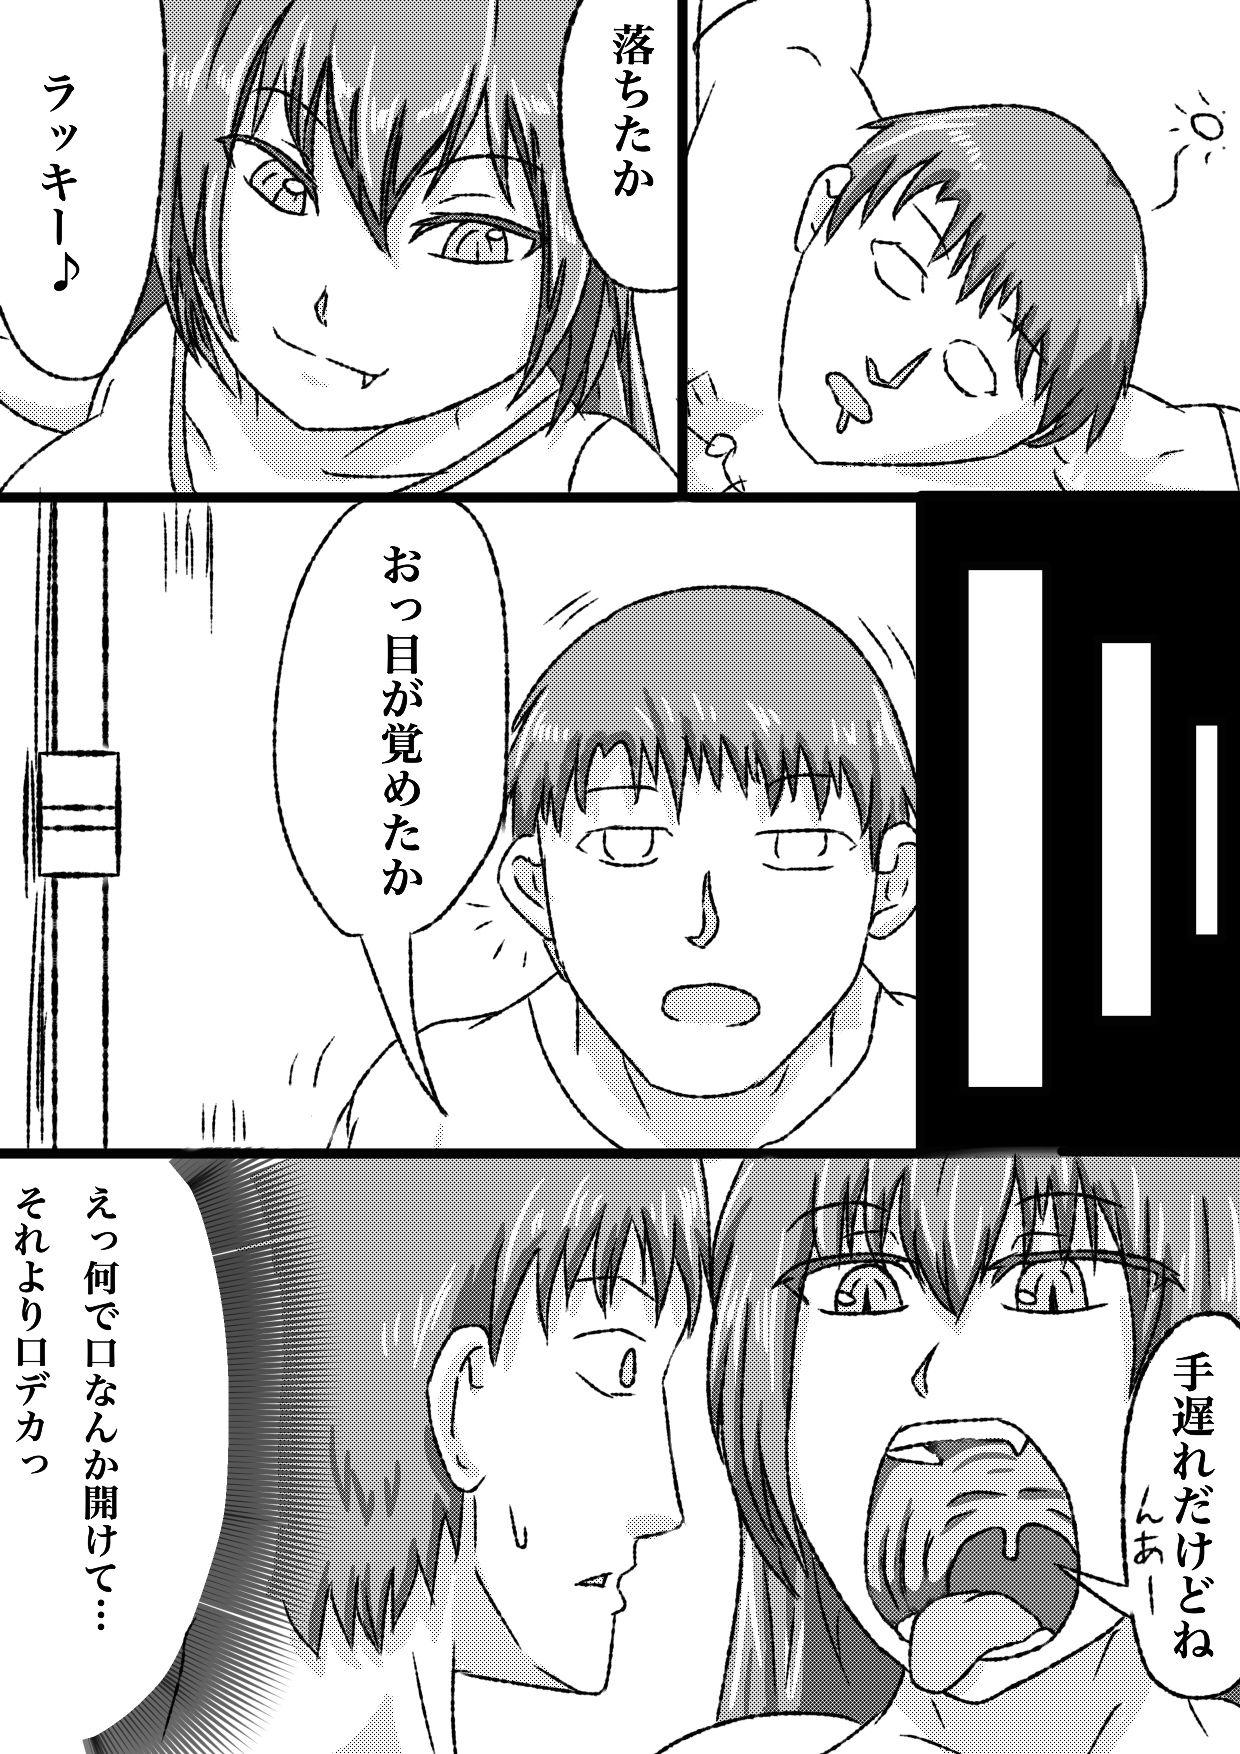 Camera uchi no ko marunomi manga - Original Milk - Page 4